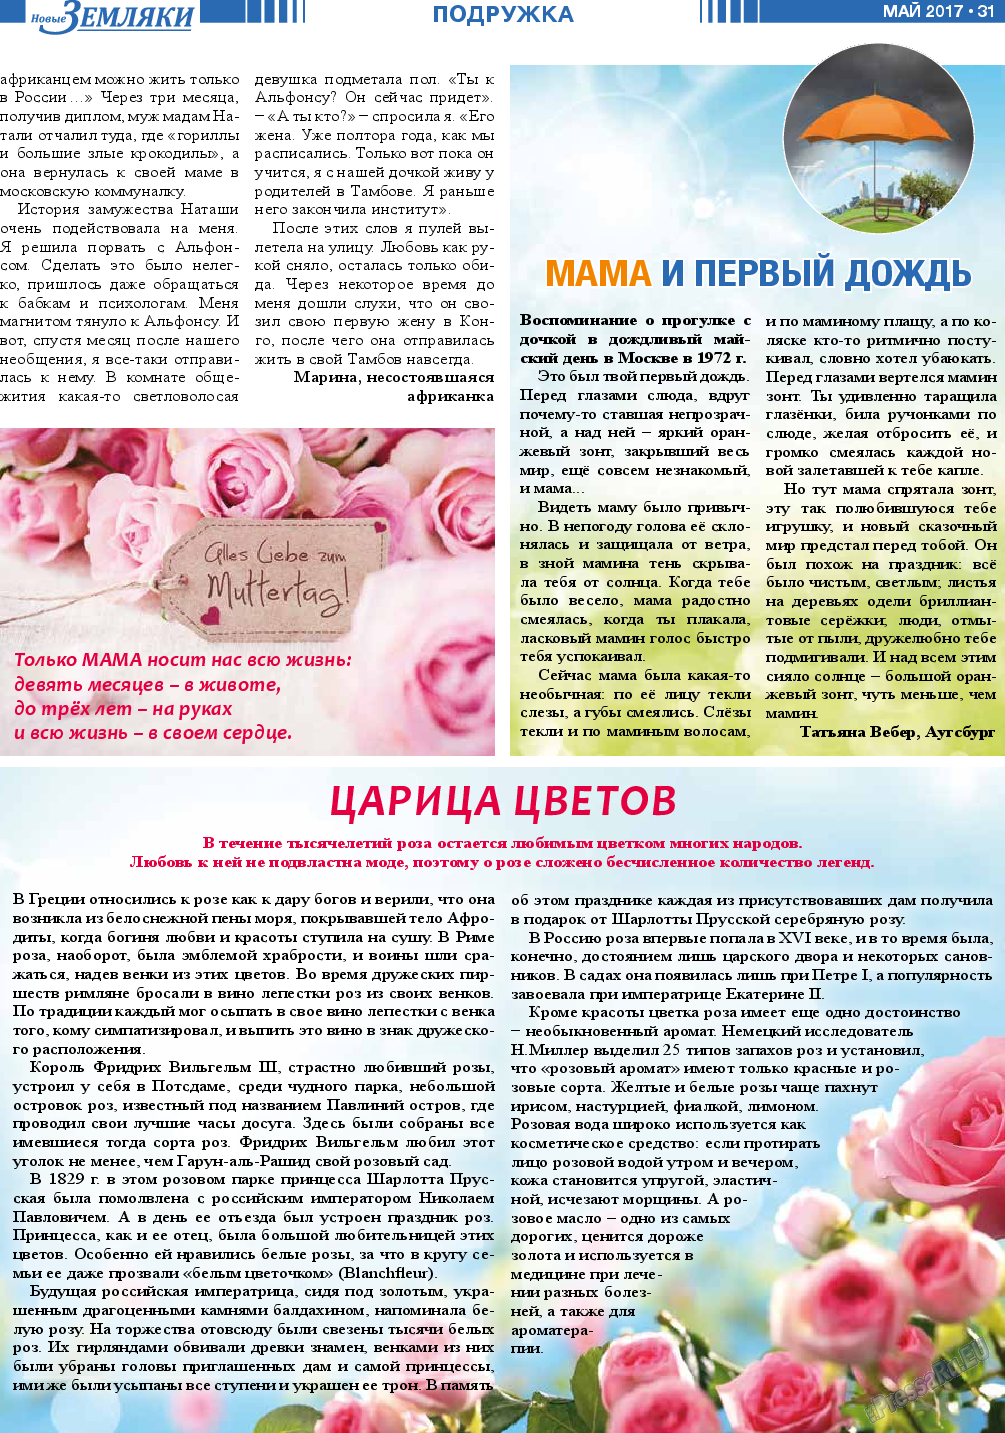 Новые Земляки, газета. 2017 №5 стр.31